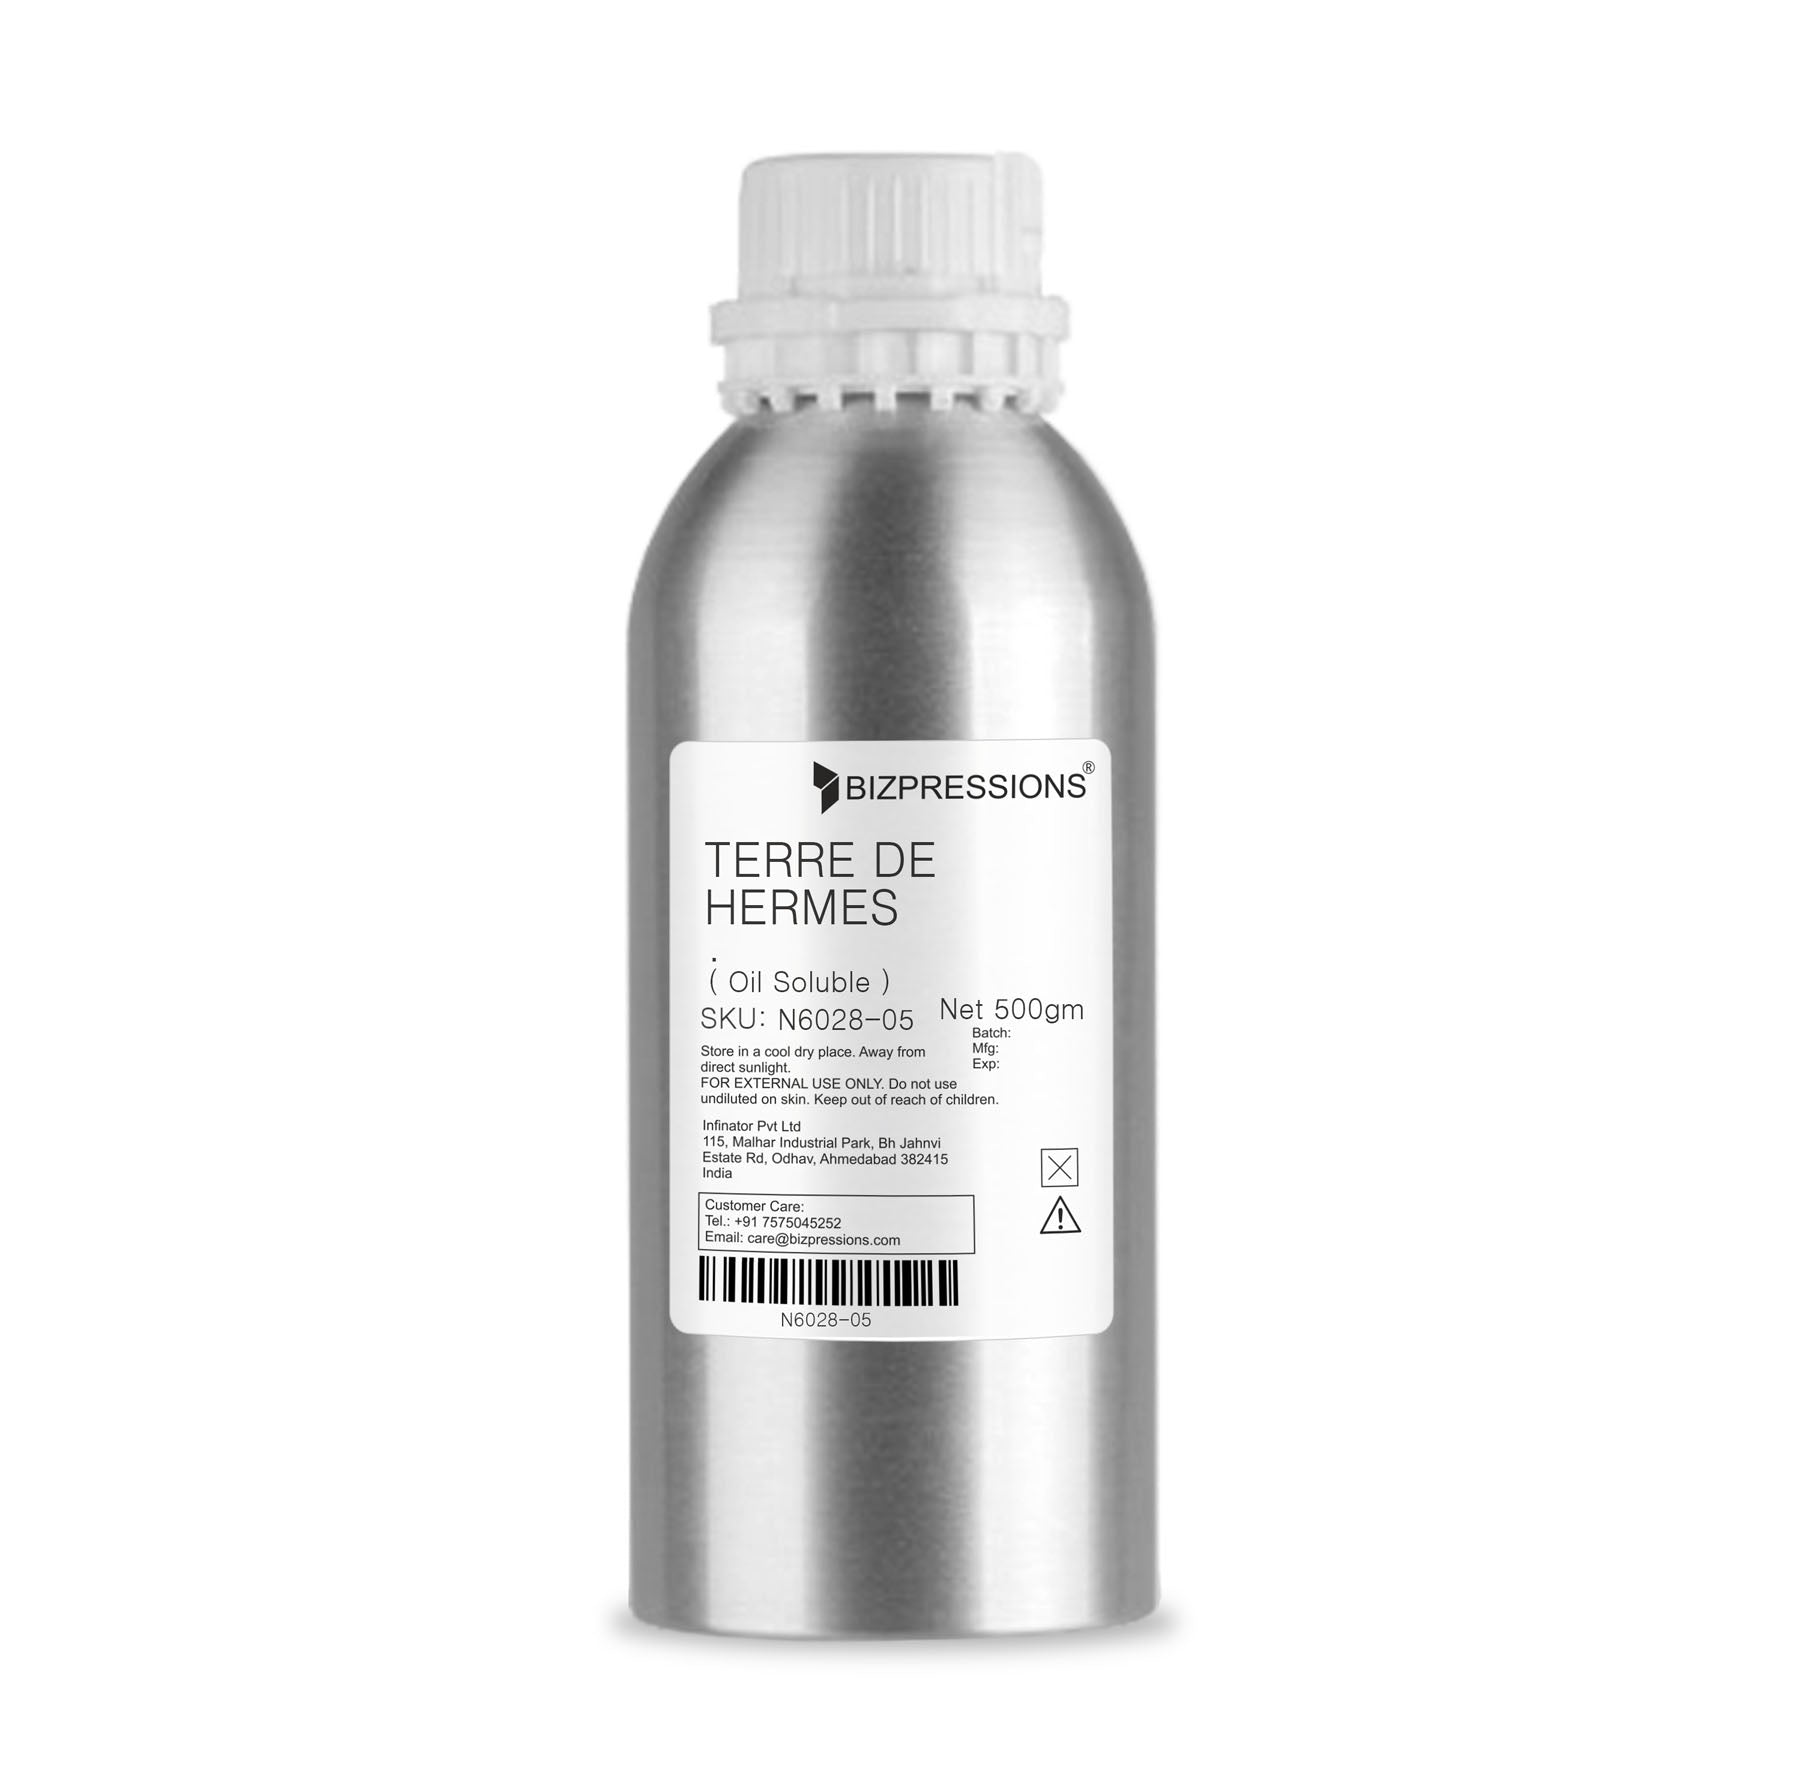 TERRE DE HERMES - Fragrance ( Oil Soluble ) - 500 gm